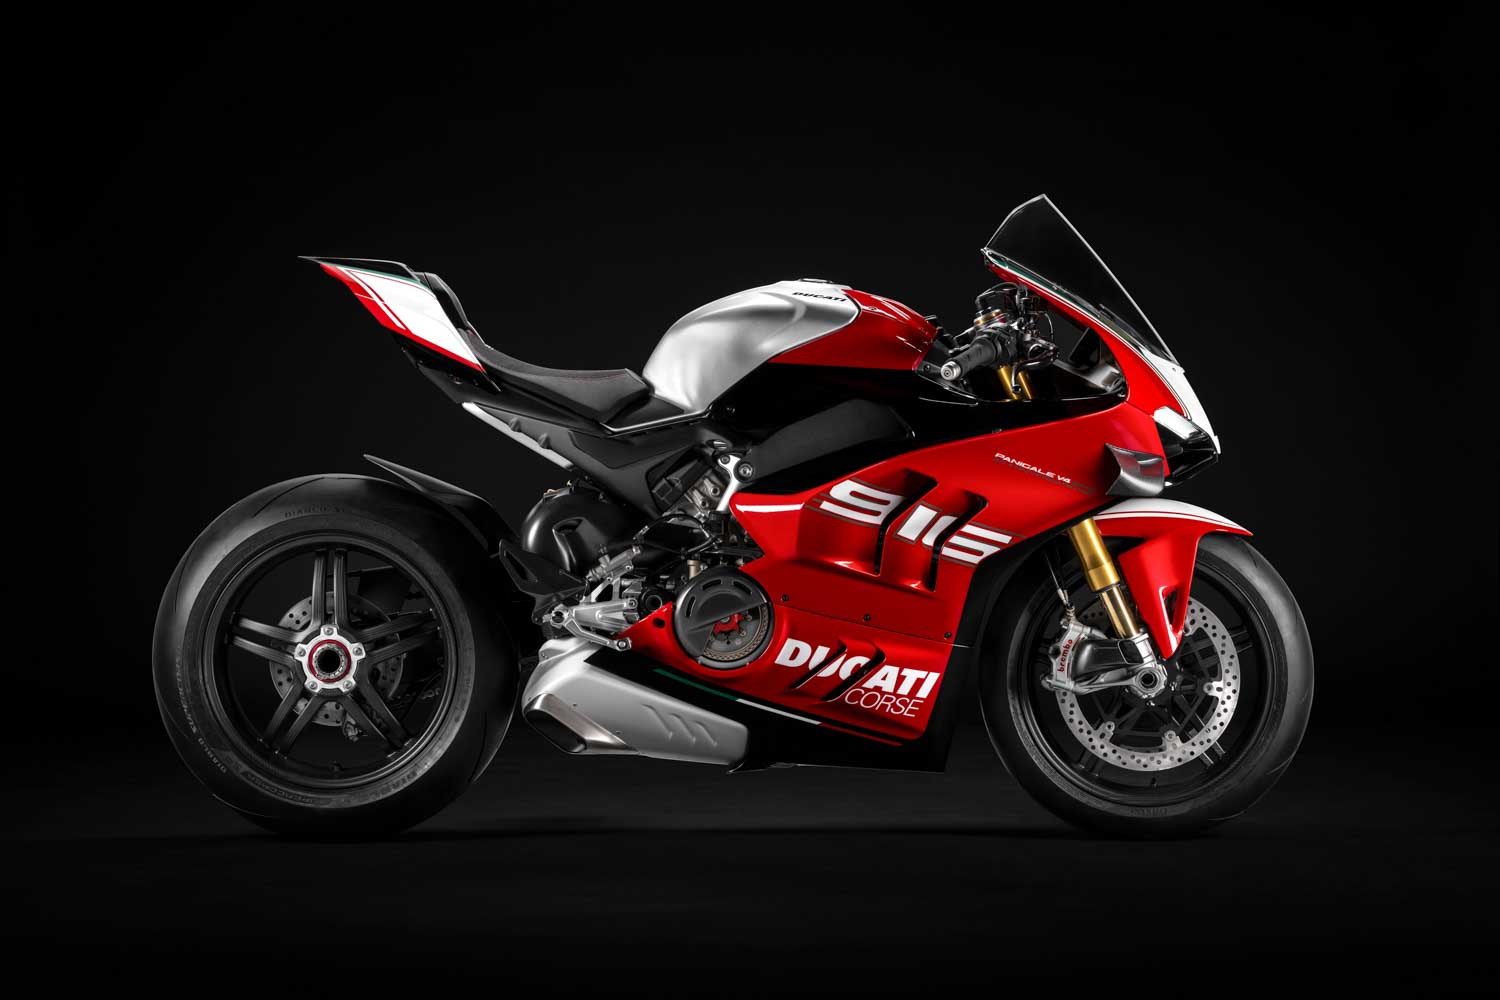 Ducati Panigale V4 SP2 30° Anniversario 916 è il modello speciale per celebrare la 916 emblema delle supersportive Ducati.